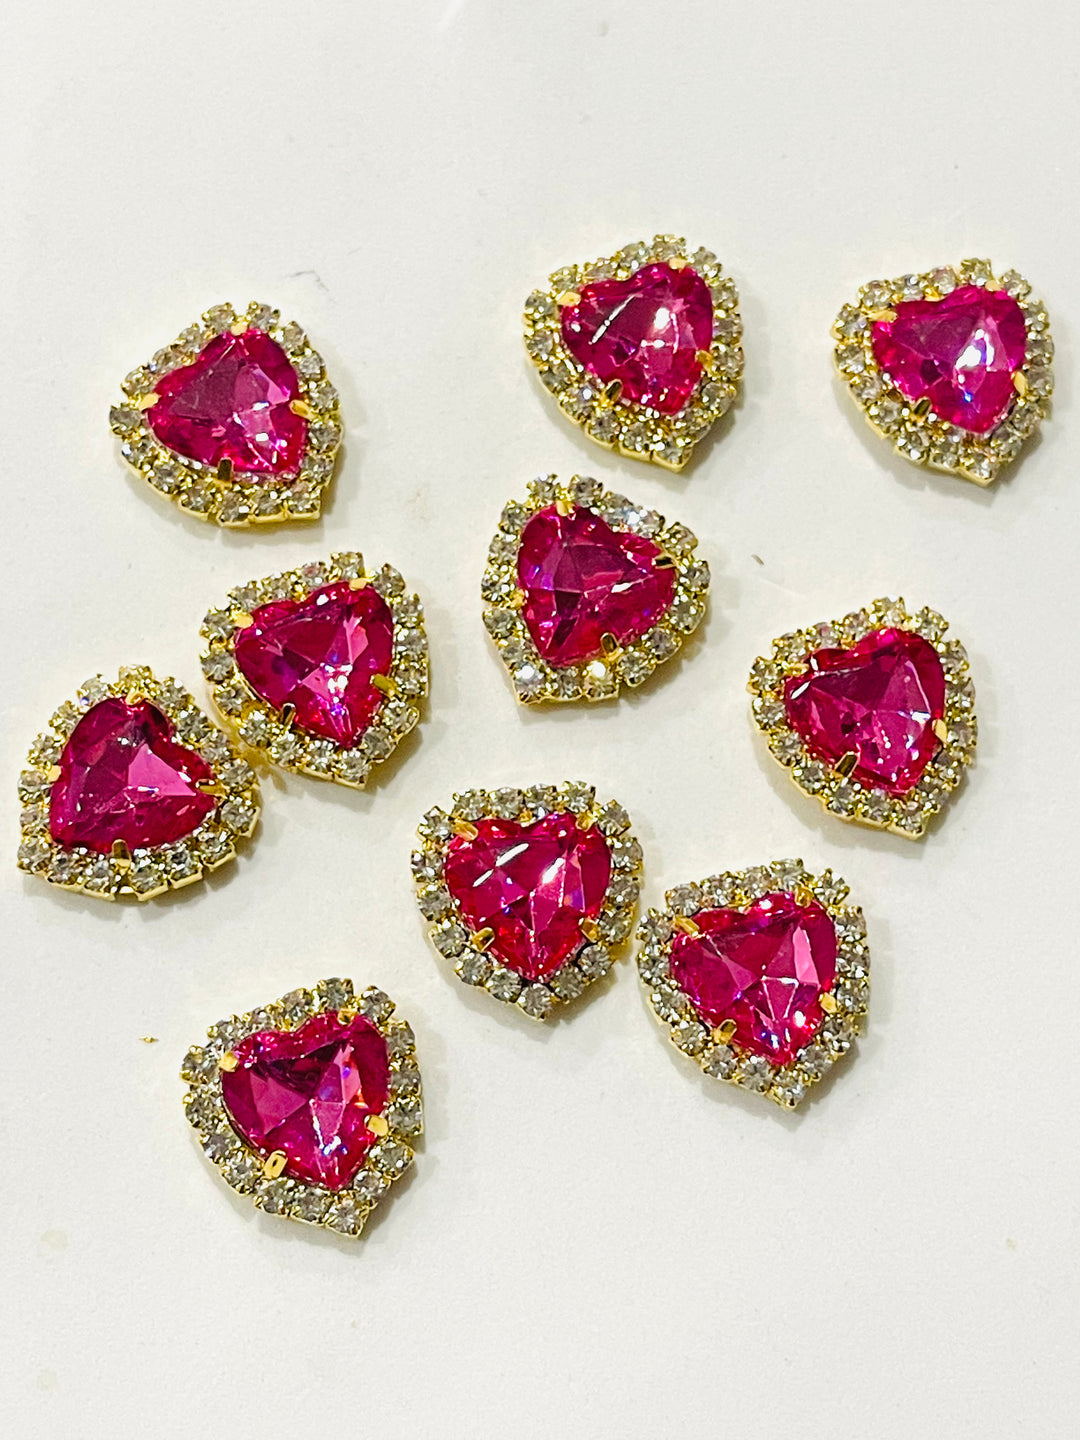 5 x embellissements à dos plat en strass en forme de cœur avec sertissage griffe dorée - grenat rose